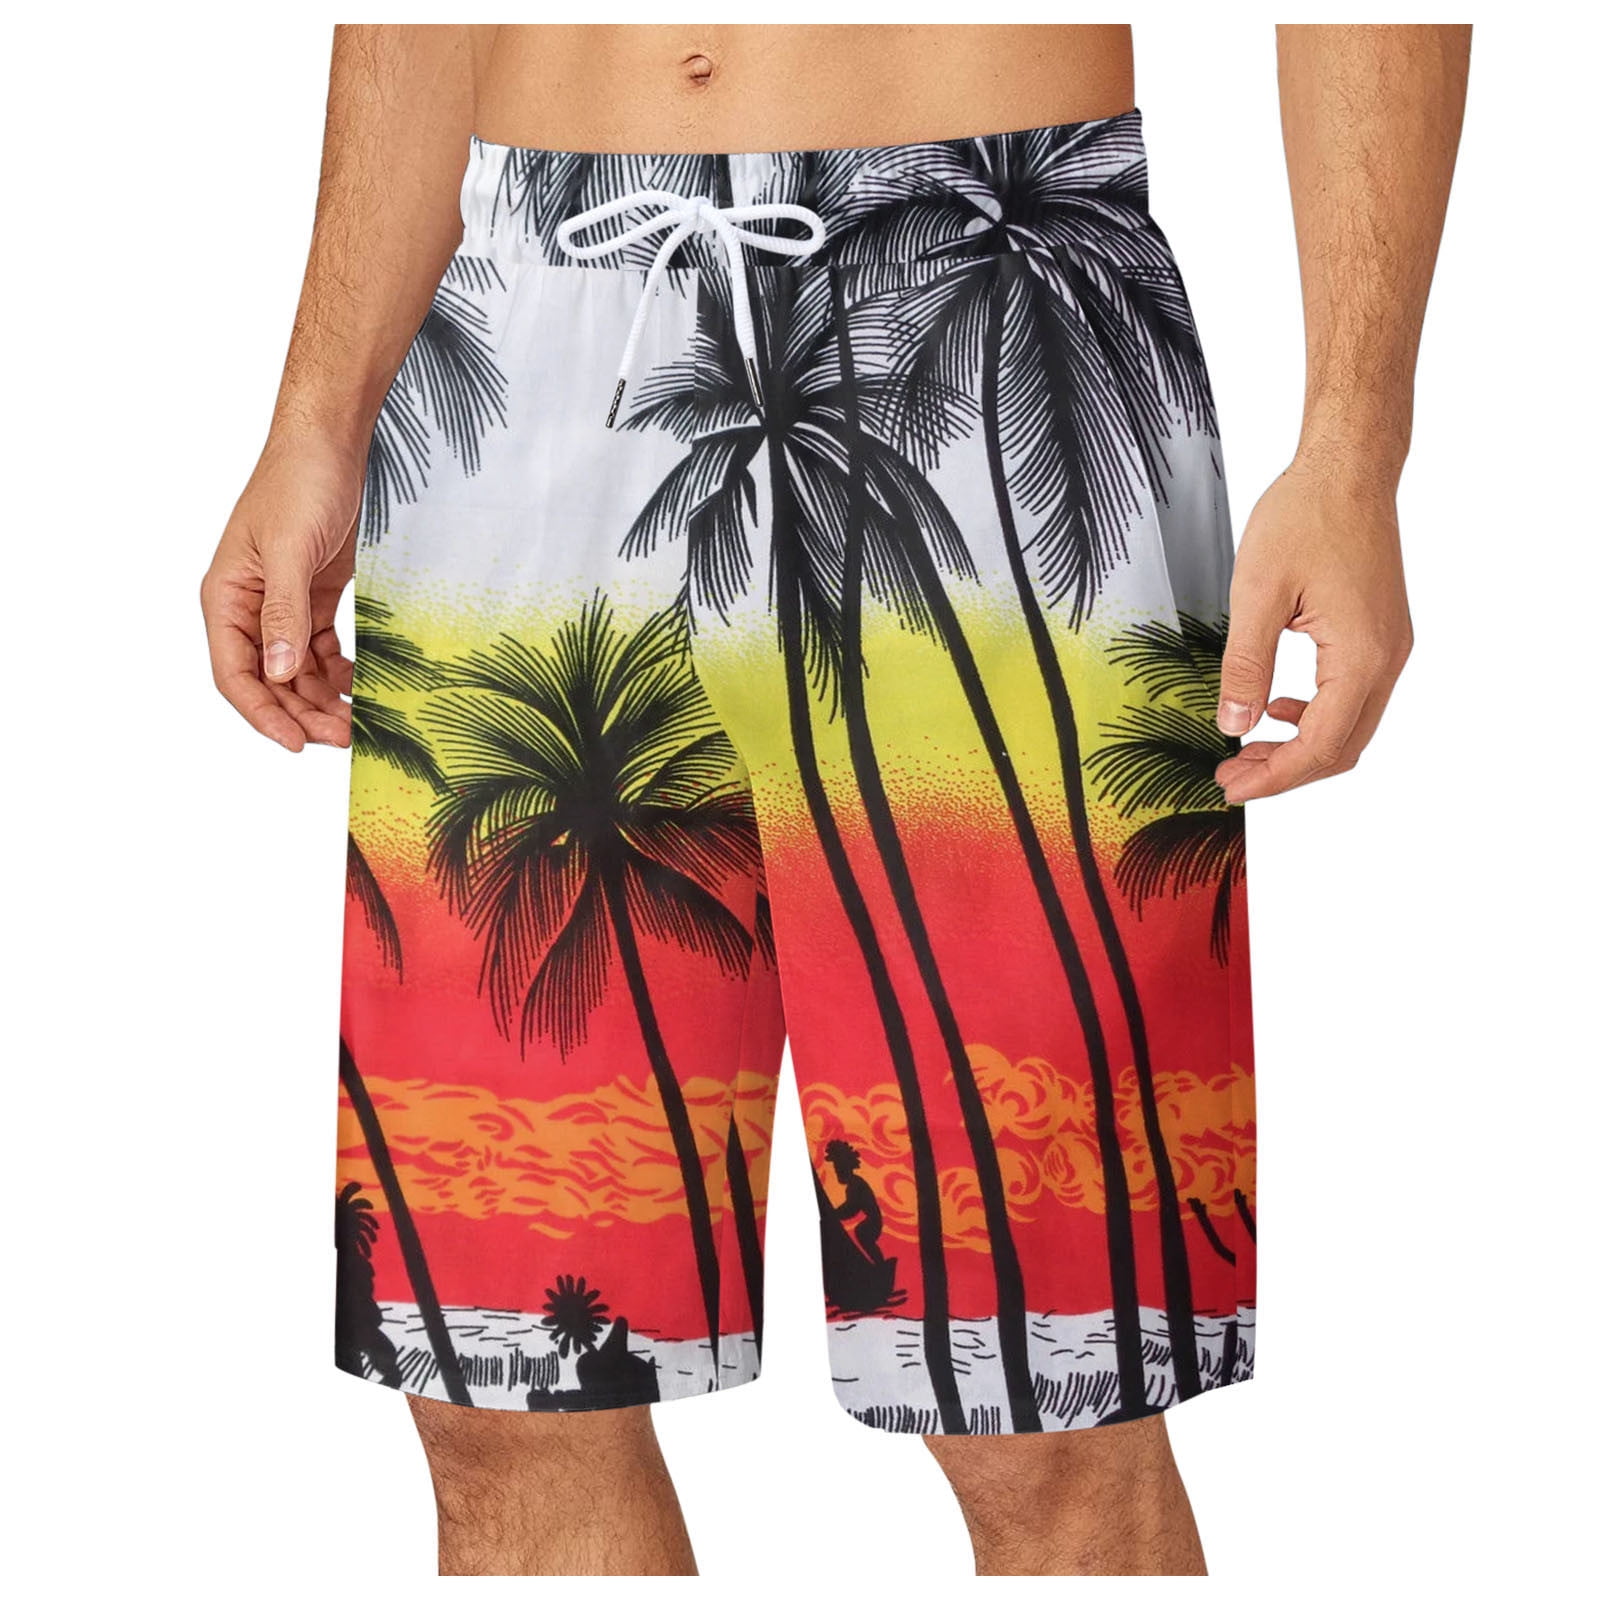 Men's Shorts Casual Style Floral Printing Shorts Hawaii Holiday Beach ...